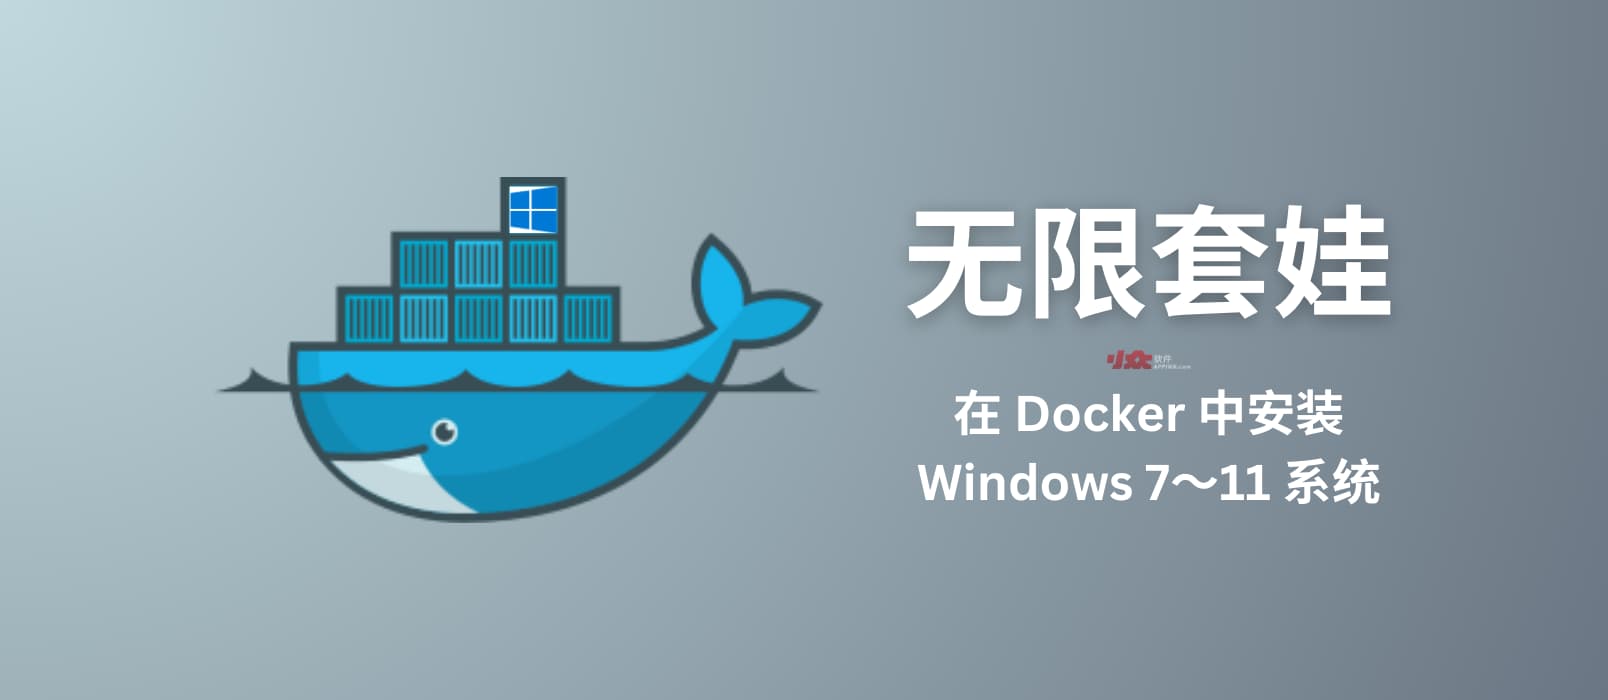 用 Docker 安装 Windows 7 到 Windows 11，无限套娃的最高境界